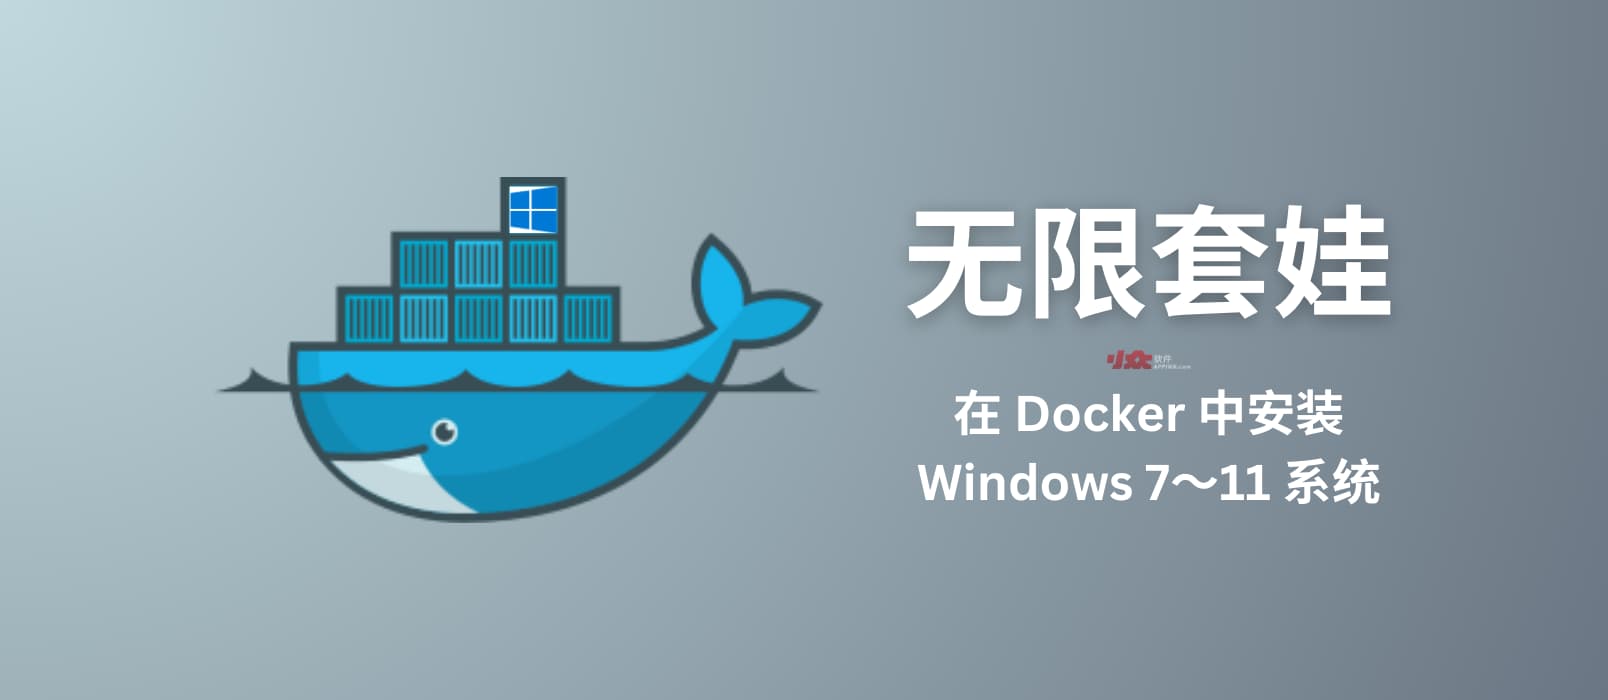 用 Docker 安装 Windows 7 到 Windows 11，无限套娃的最高境界